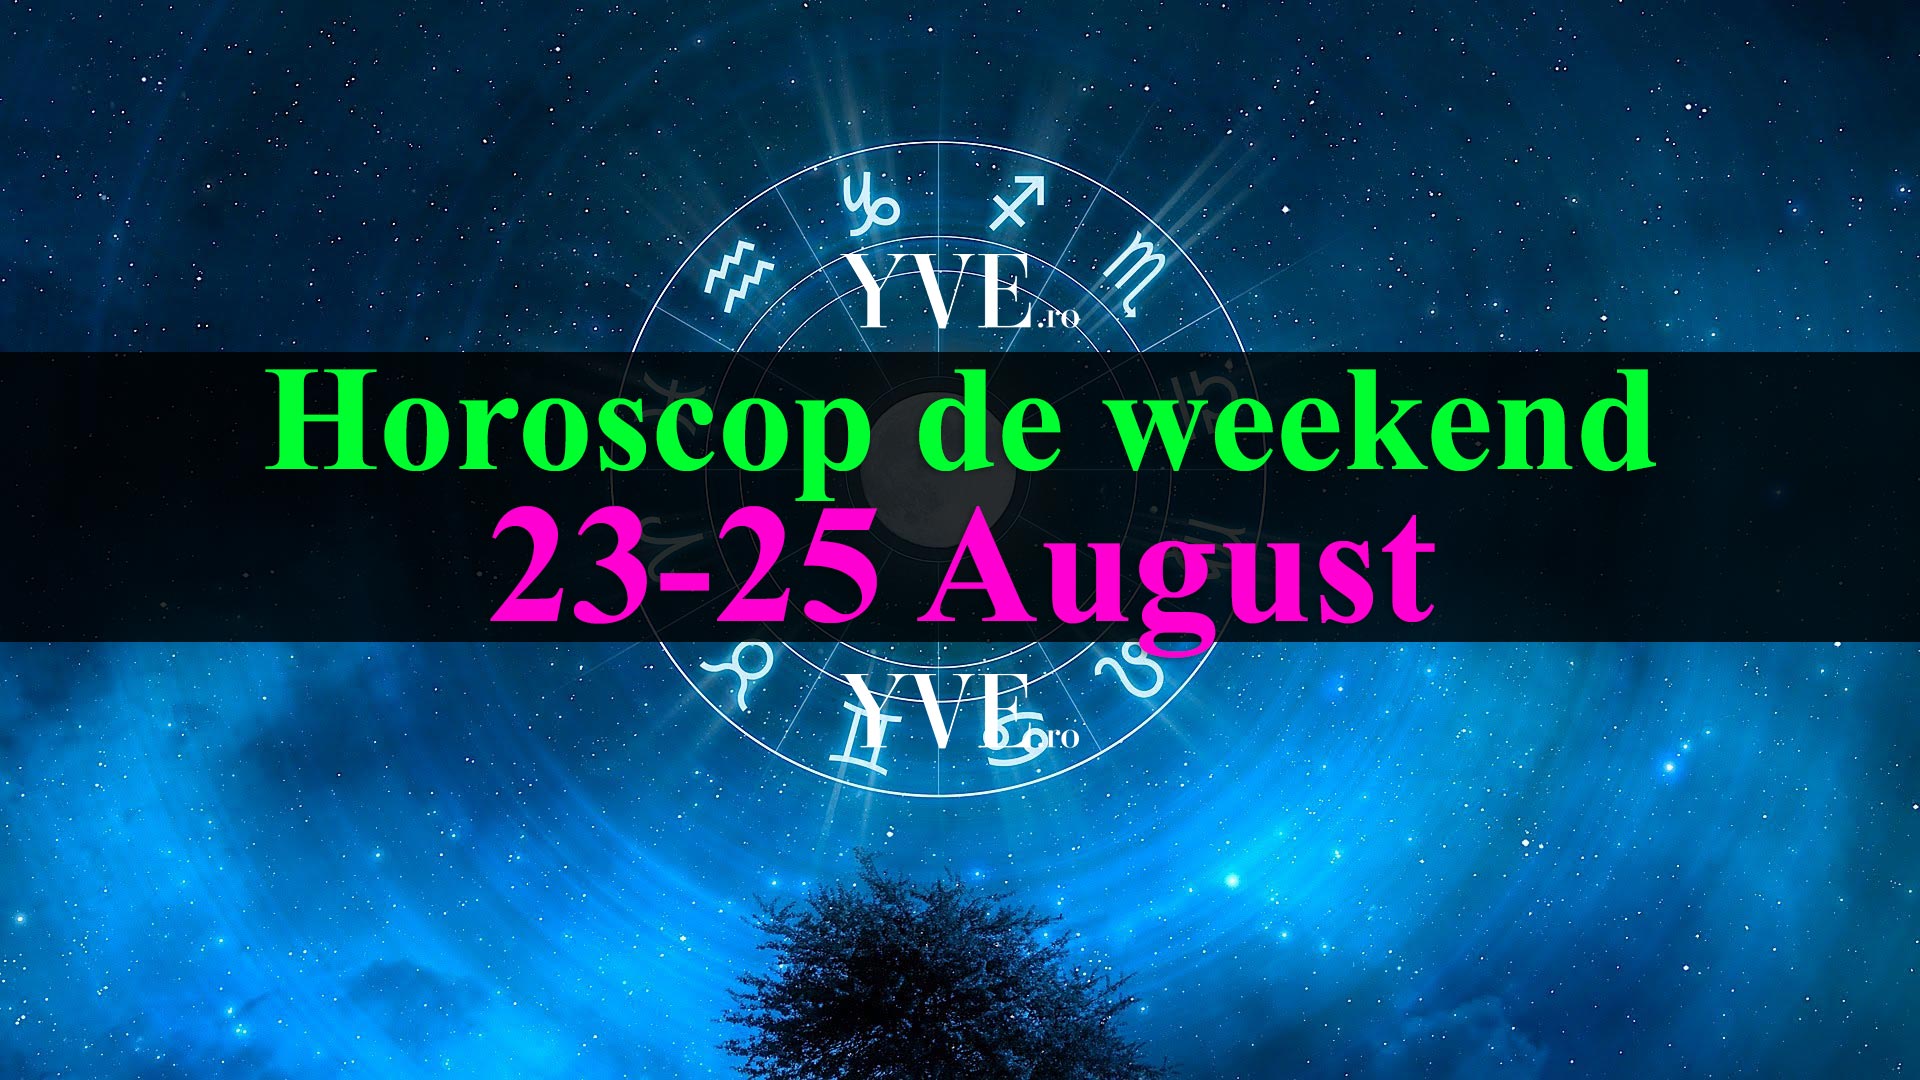 Horoscop de weekend 23-25 August 2019